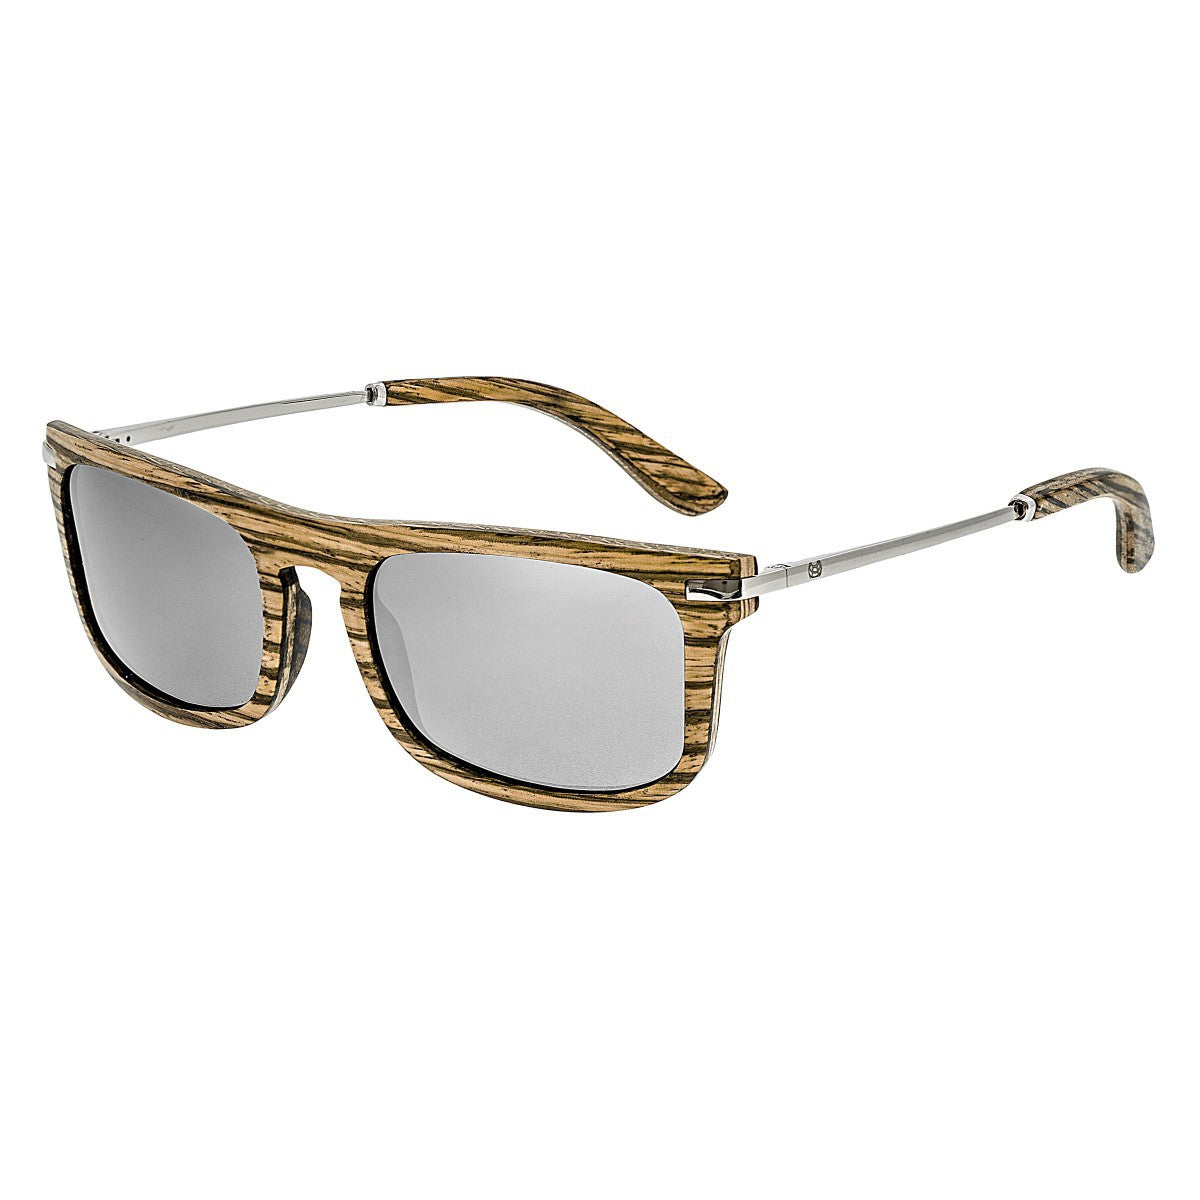 Earth Wood Queensland Polarized Sunglasses - Zebrawood/Grey - ESG011SL